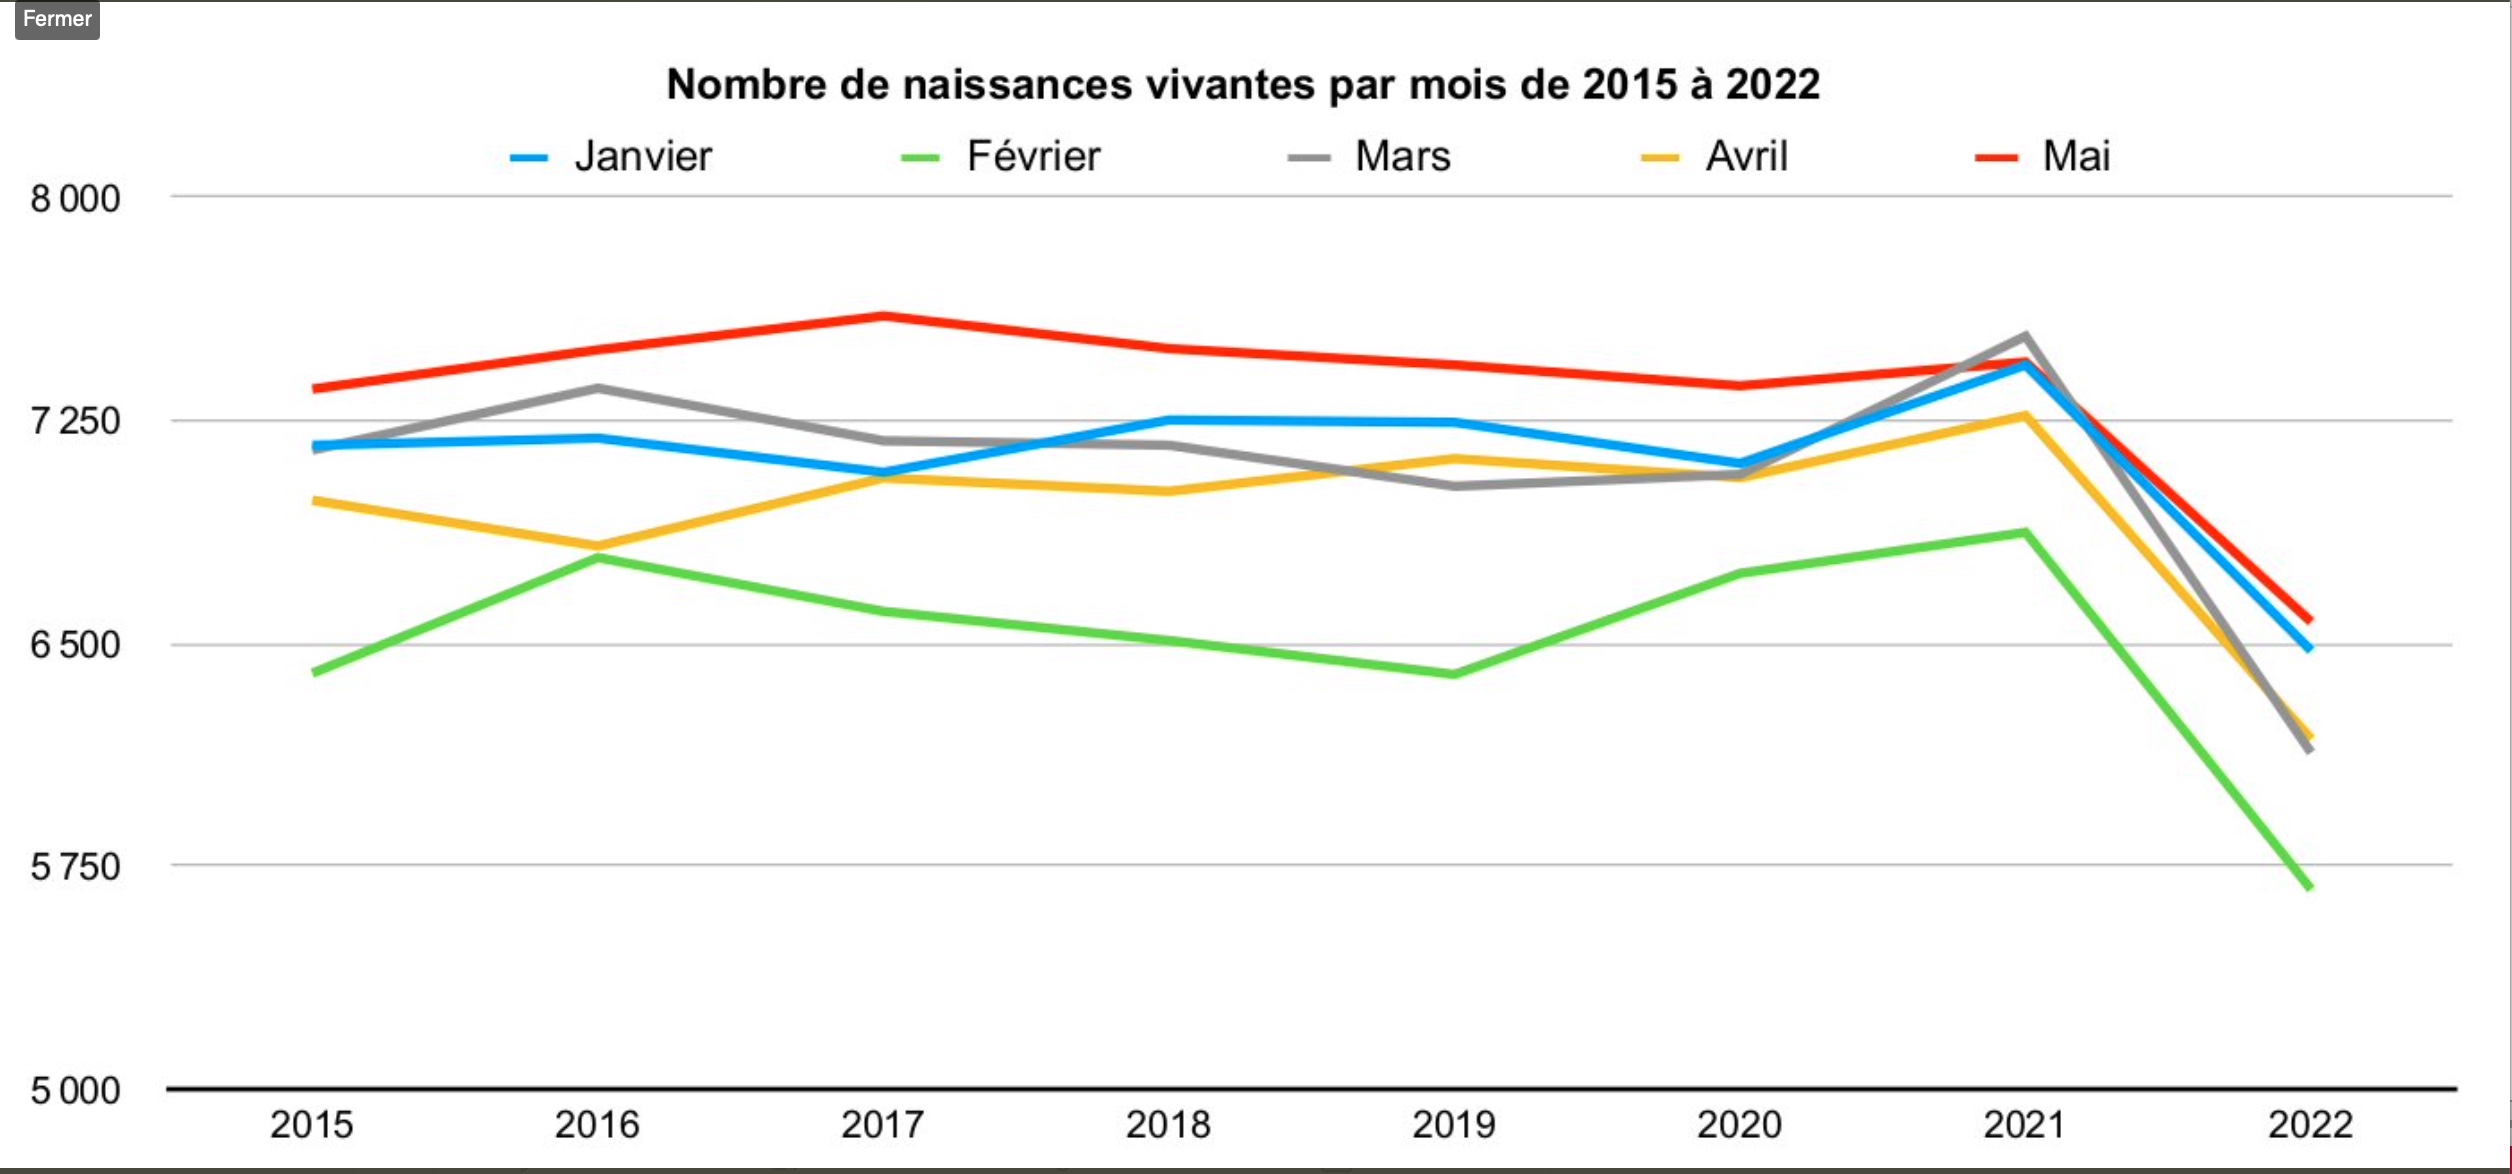 Nombre de naissances vivantes par mois de 2015 à 2022 en Suisse